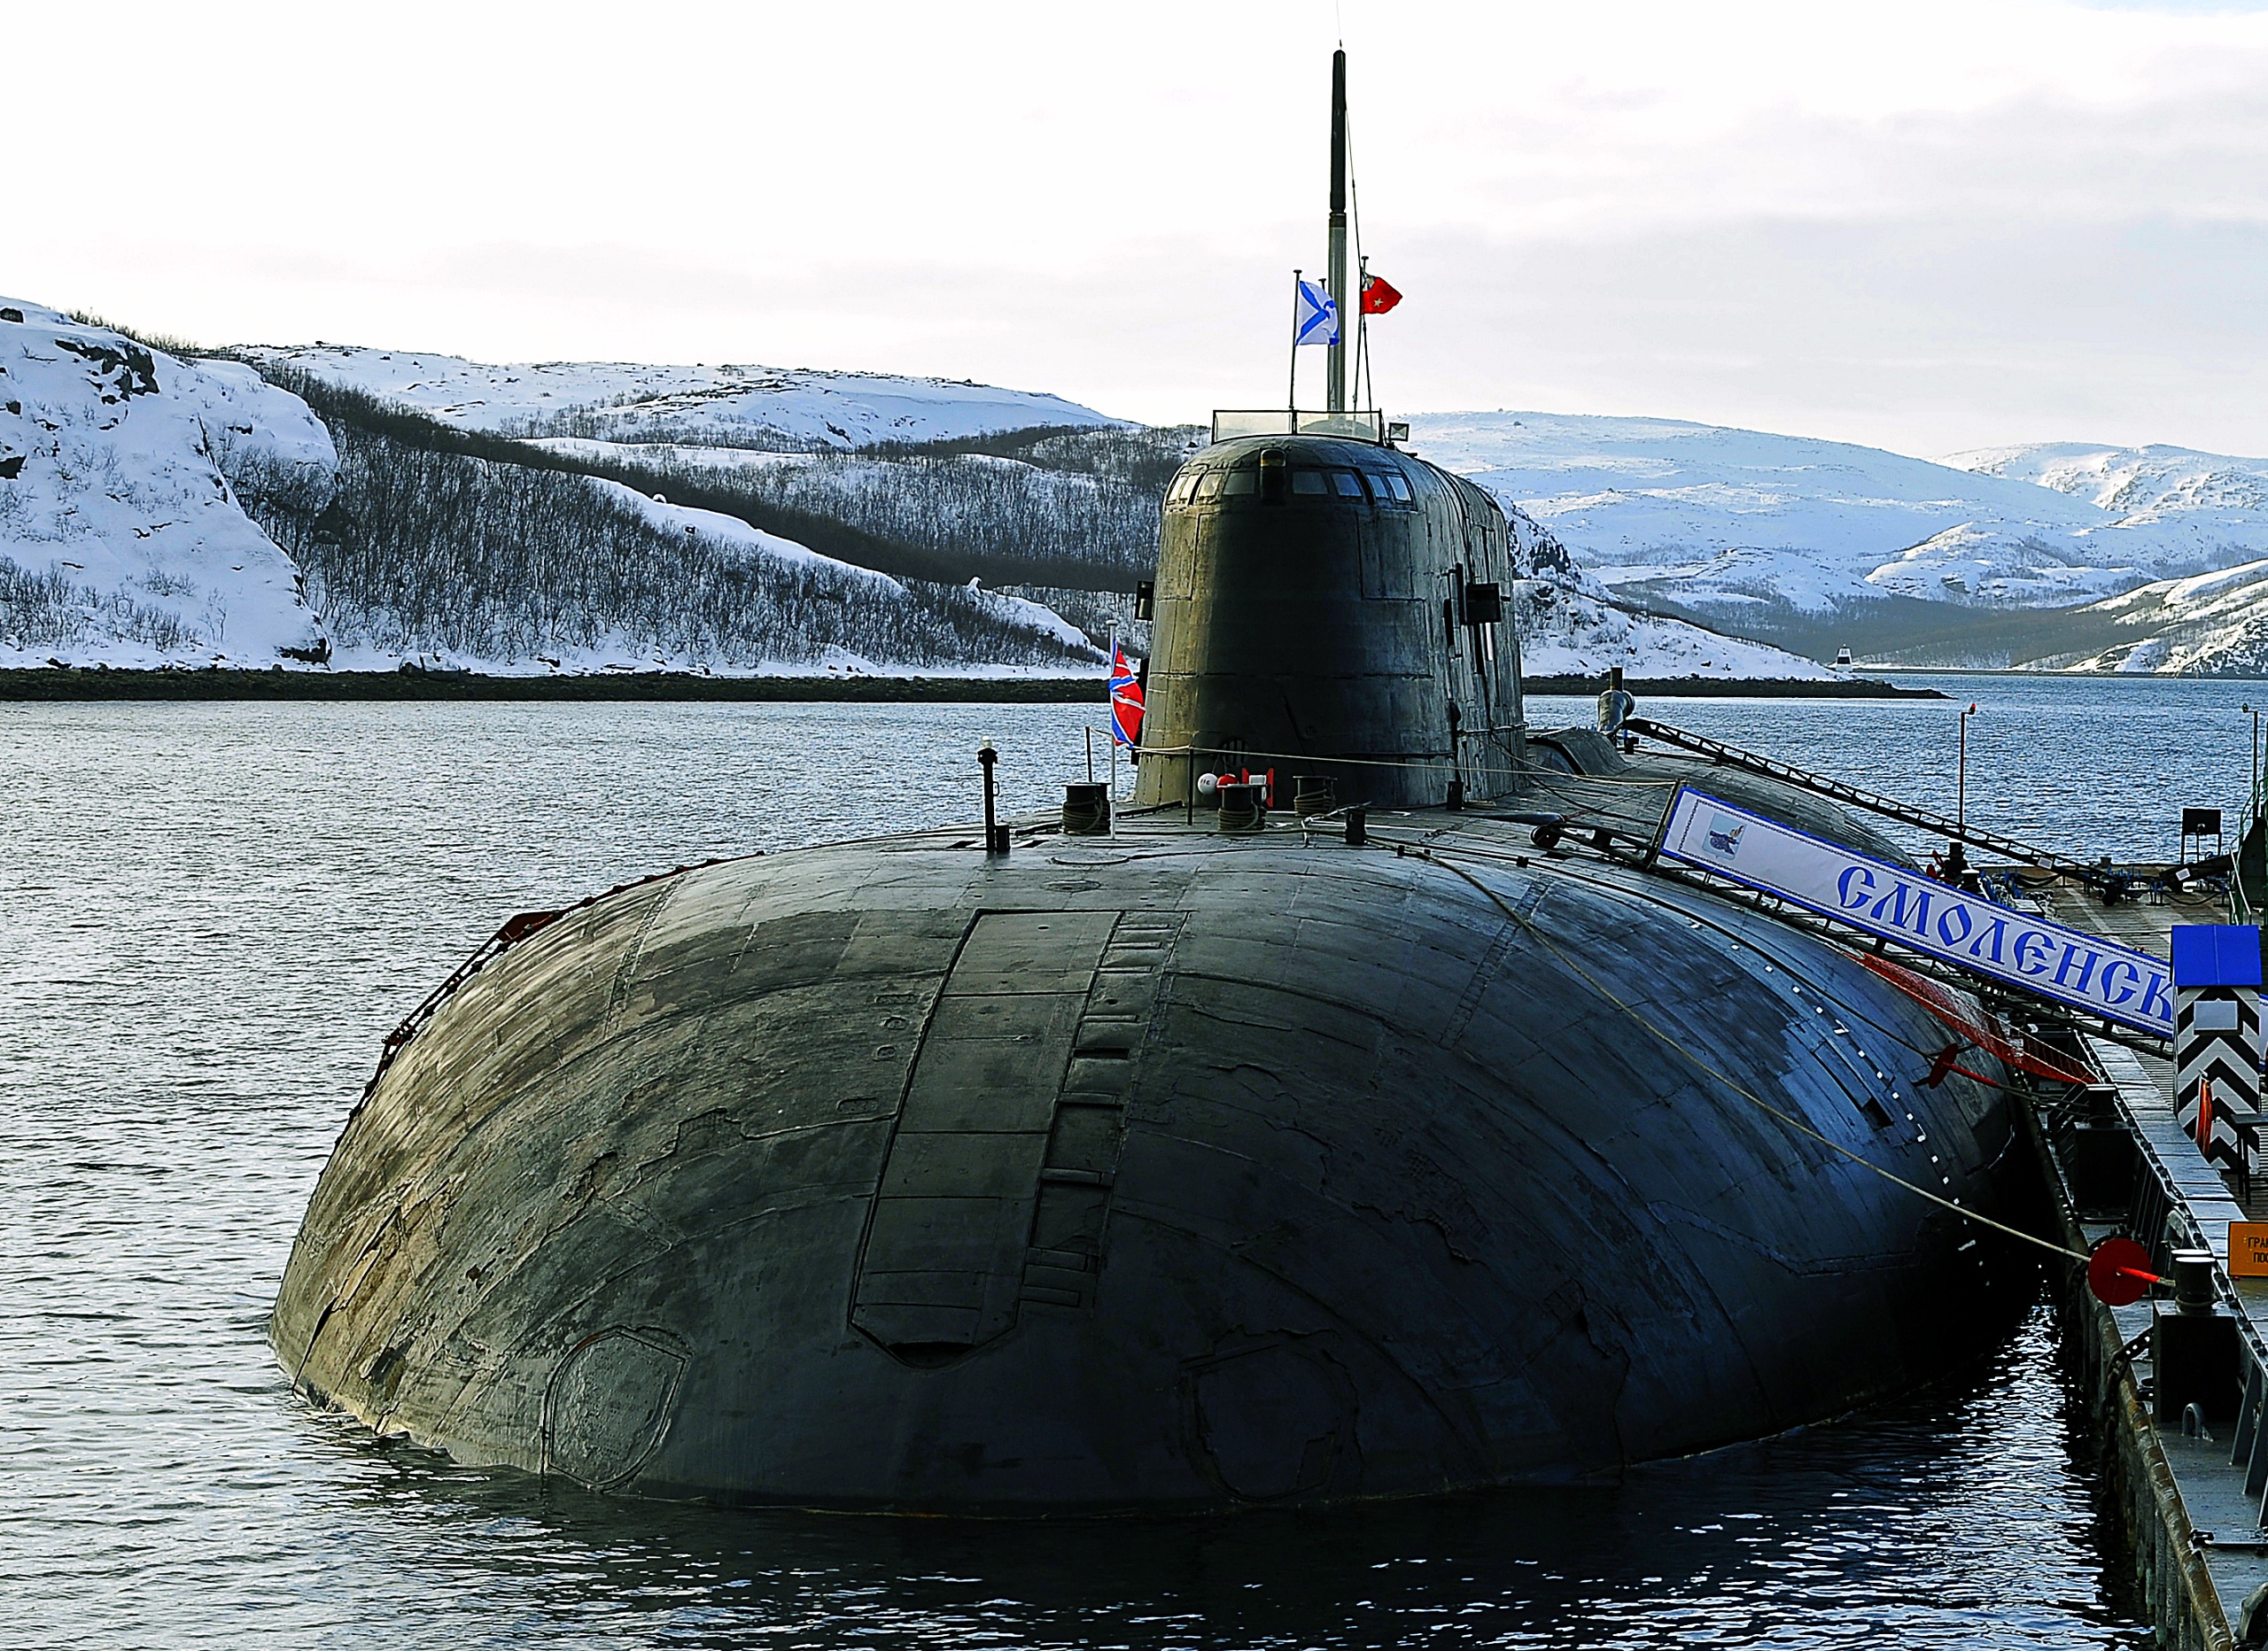 Пл тка. 949а Антей. Подводные лодки проекта 949а «Антей». АПЛ Смоленск подводная лодка. Подводные лодки проекта 949а Антей СССР.